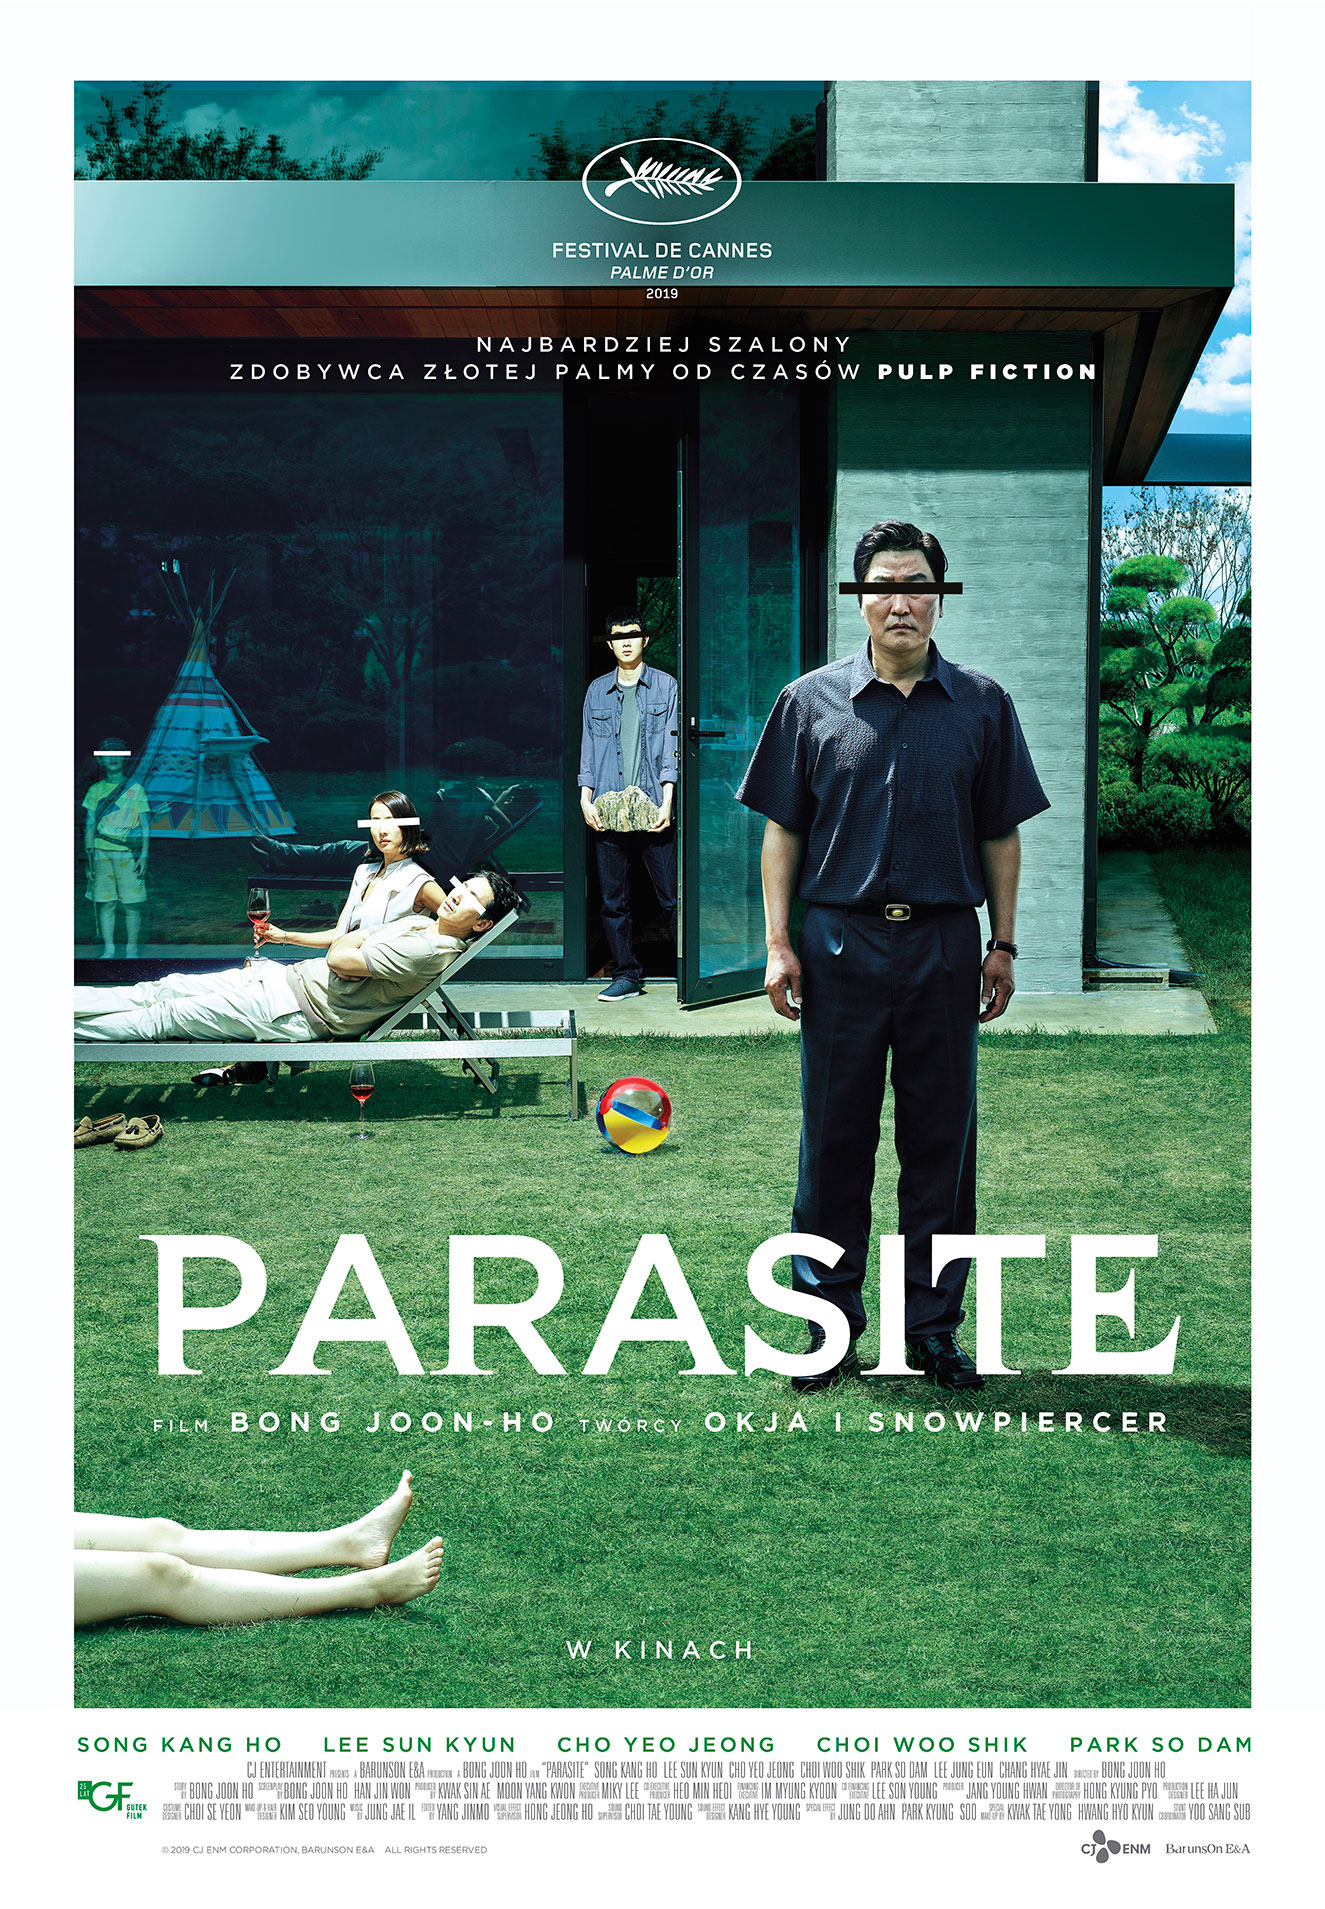 WIOSNA FILMÓW – Parasite